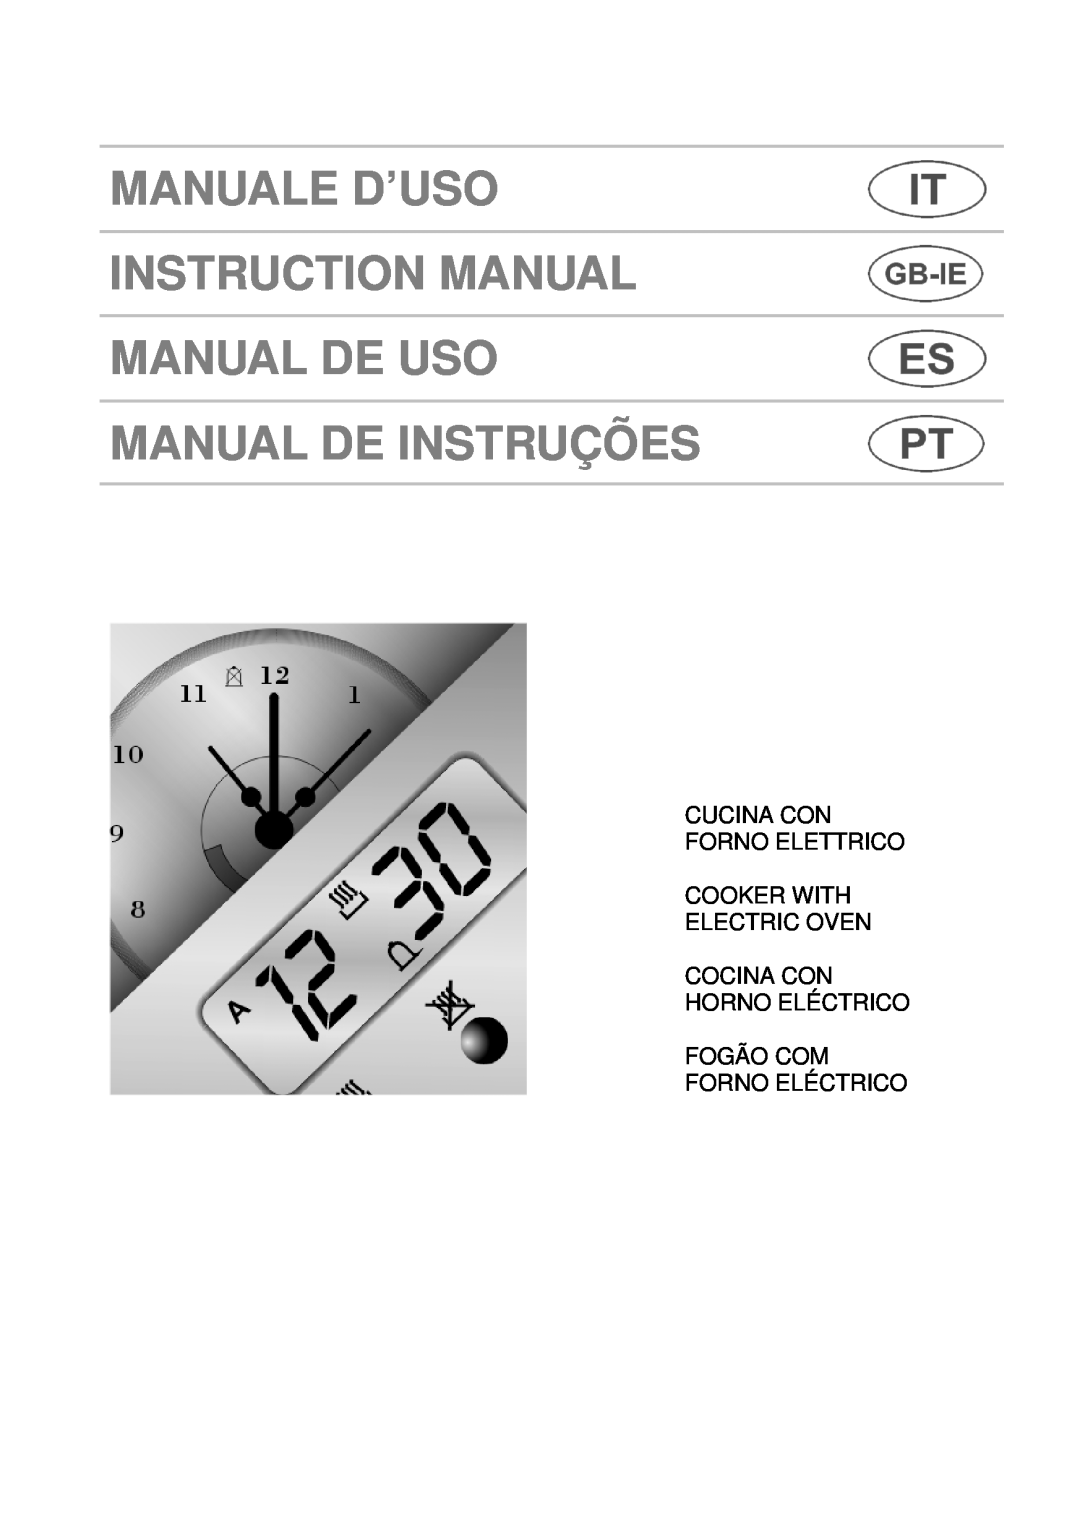 Smeg A1.1 instruction manual Manual De Instruções, Cucina Con Forno Elettrico Cooker With, Fogão Com Forno Eléctrico 